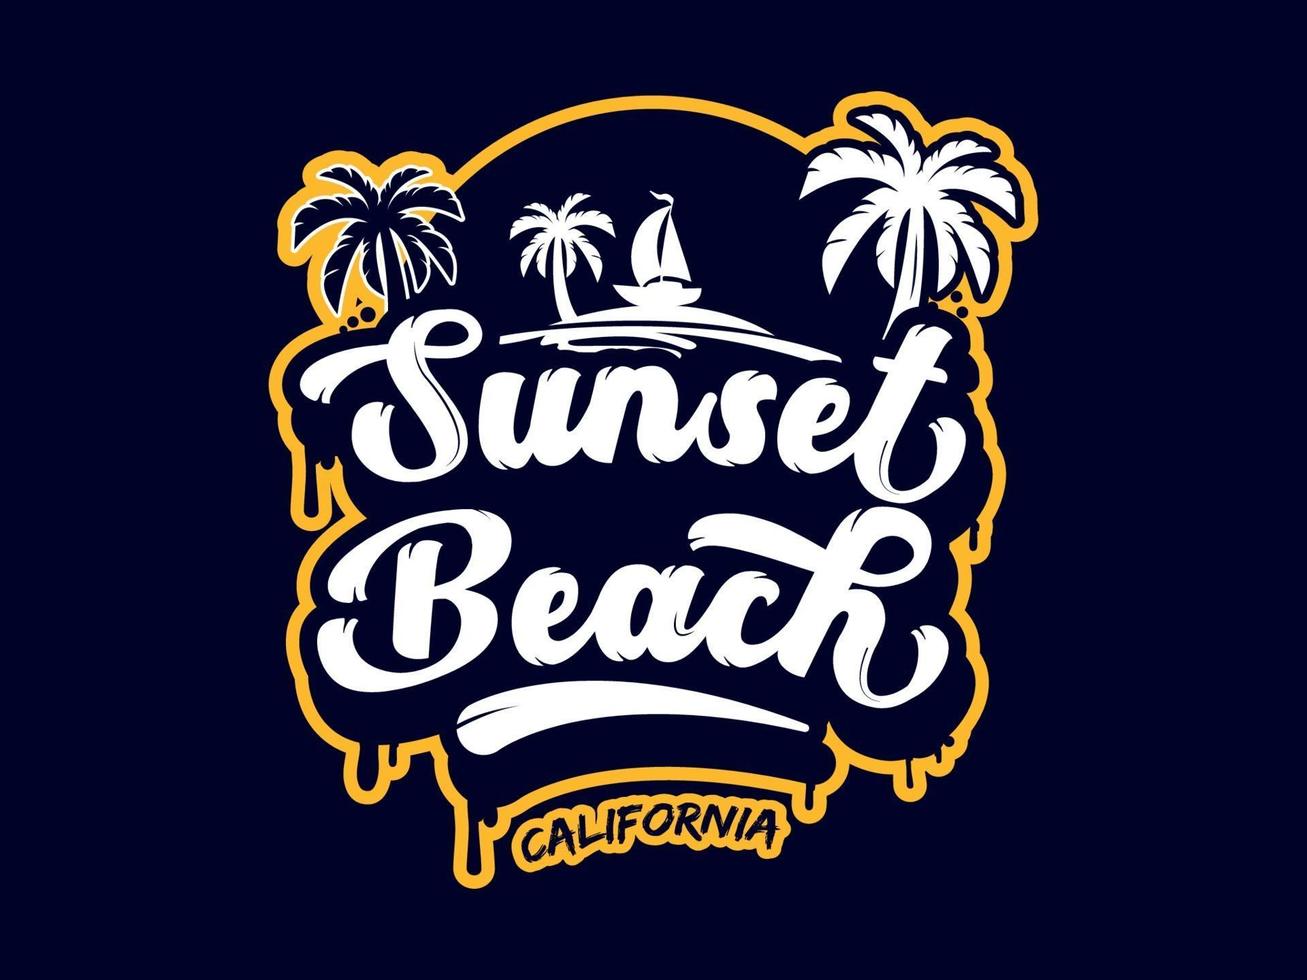 California Sunset Beach Illustration Vector Design For T-shirt